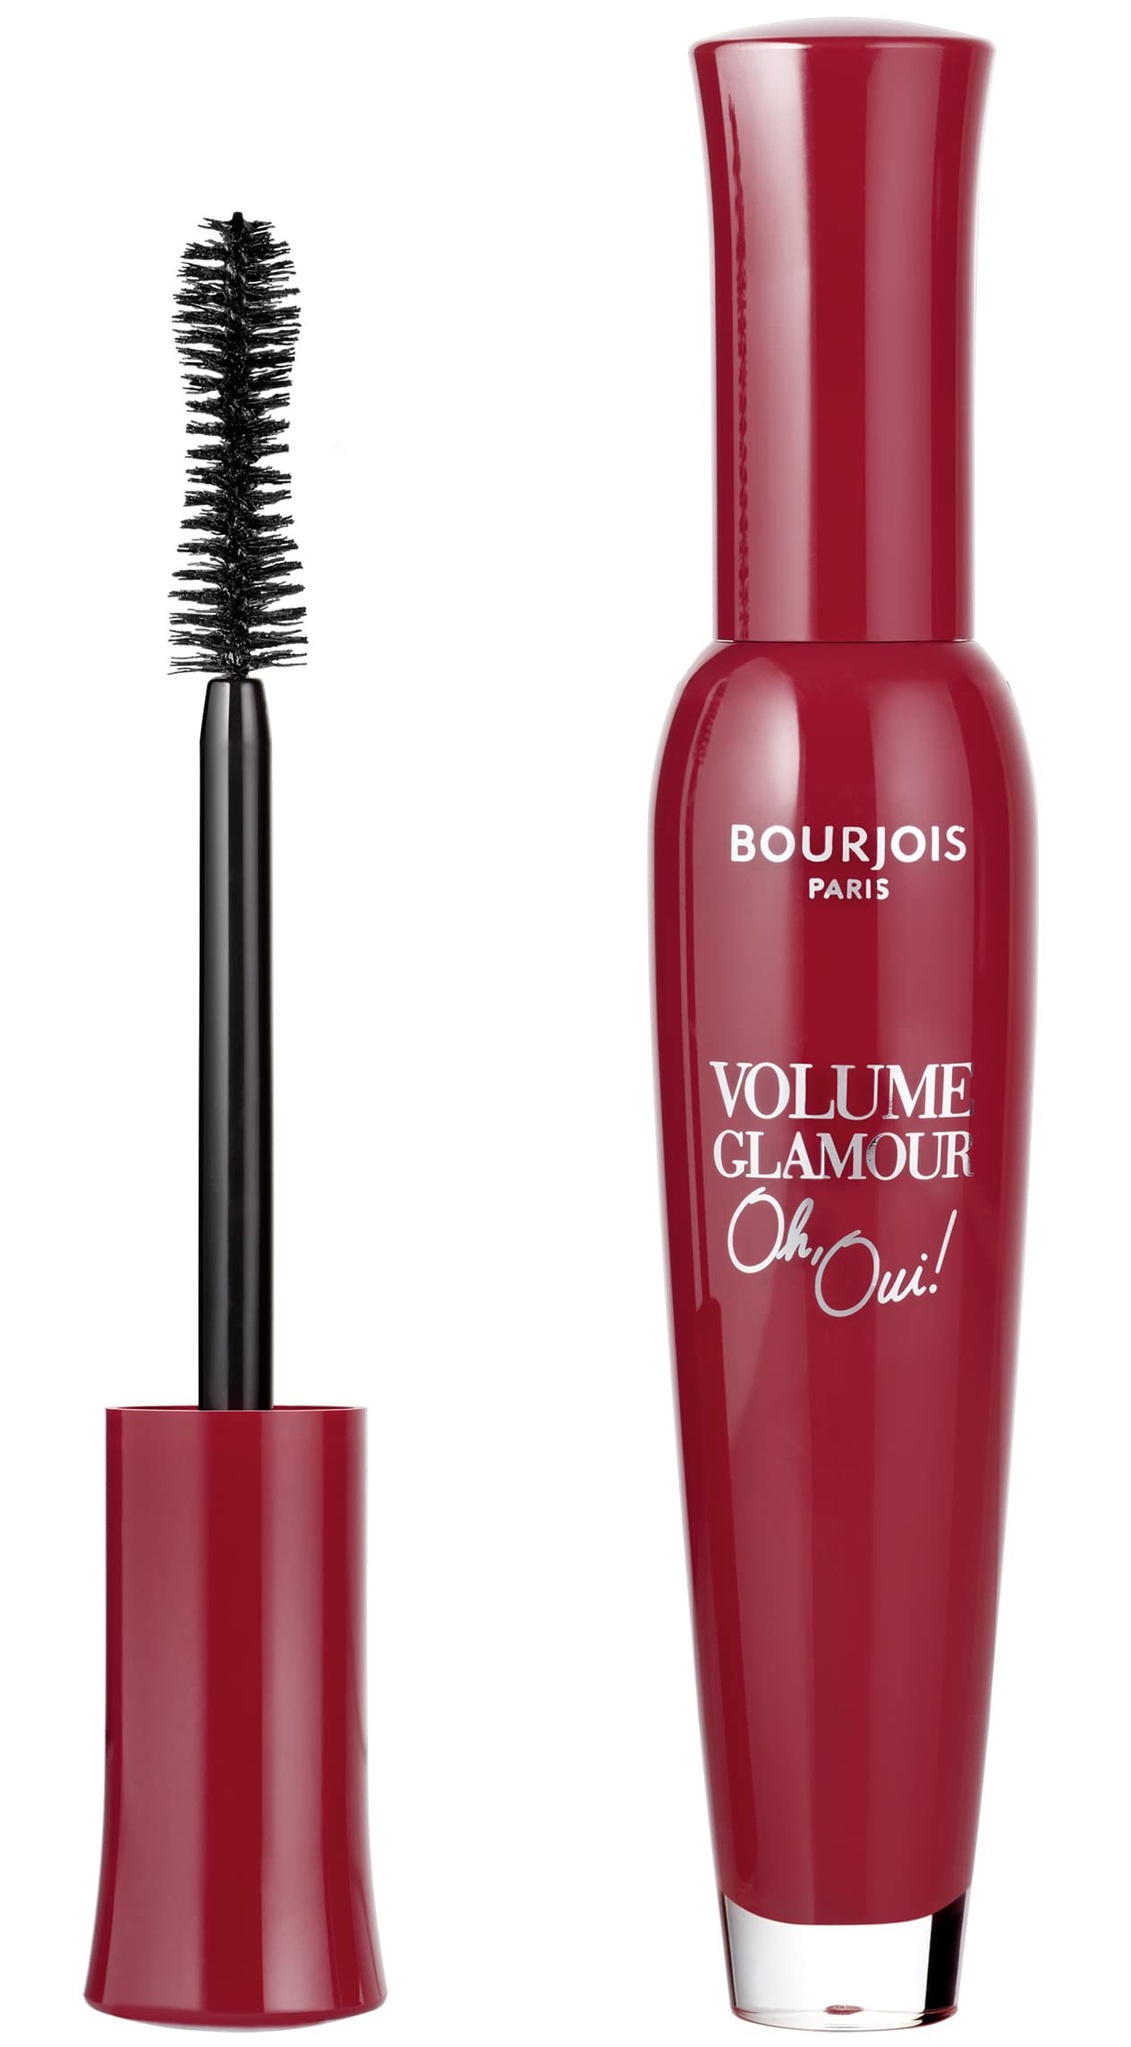 Bourjois Volume Glamour Oh Oui! Mascara